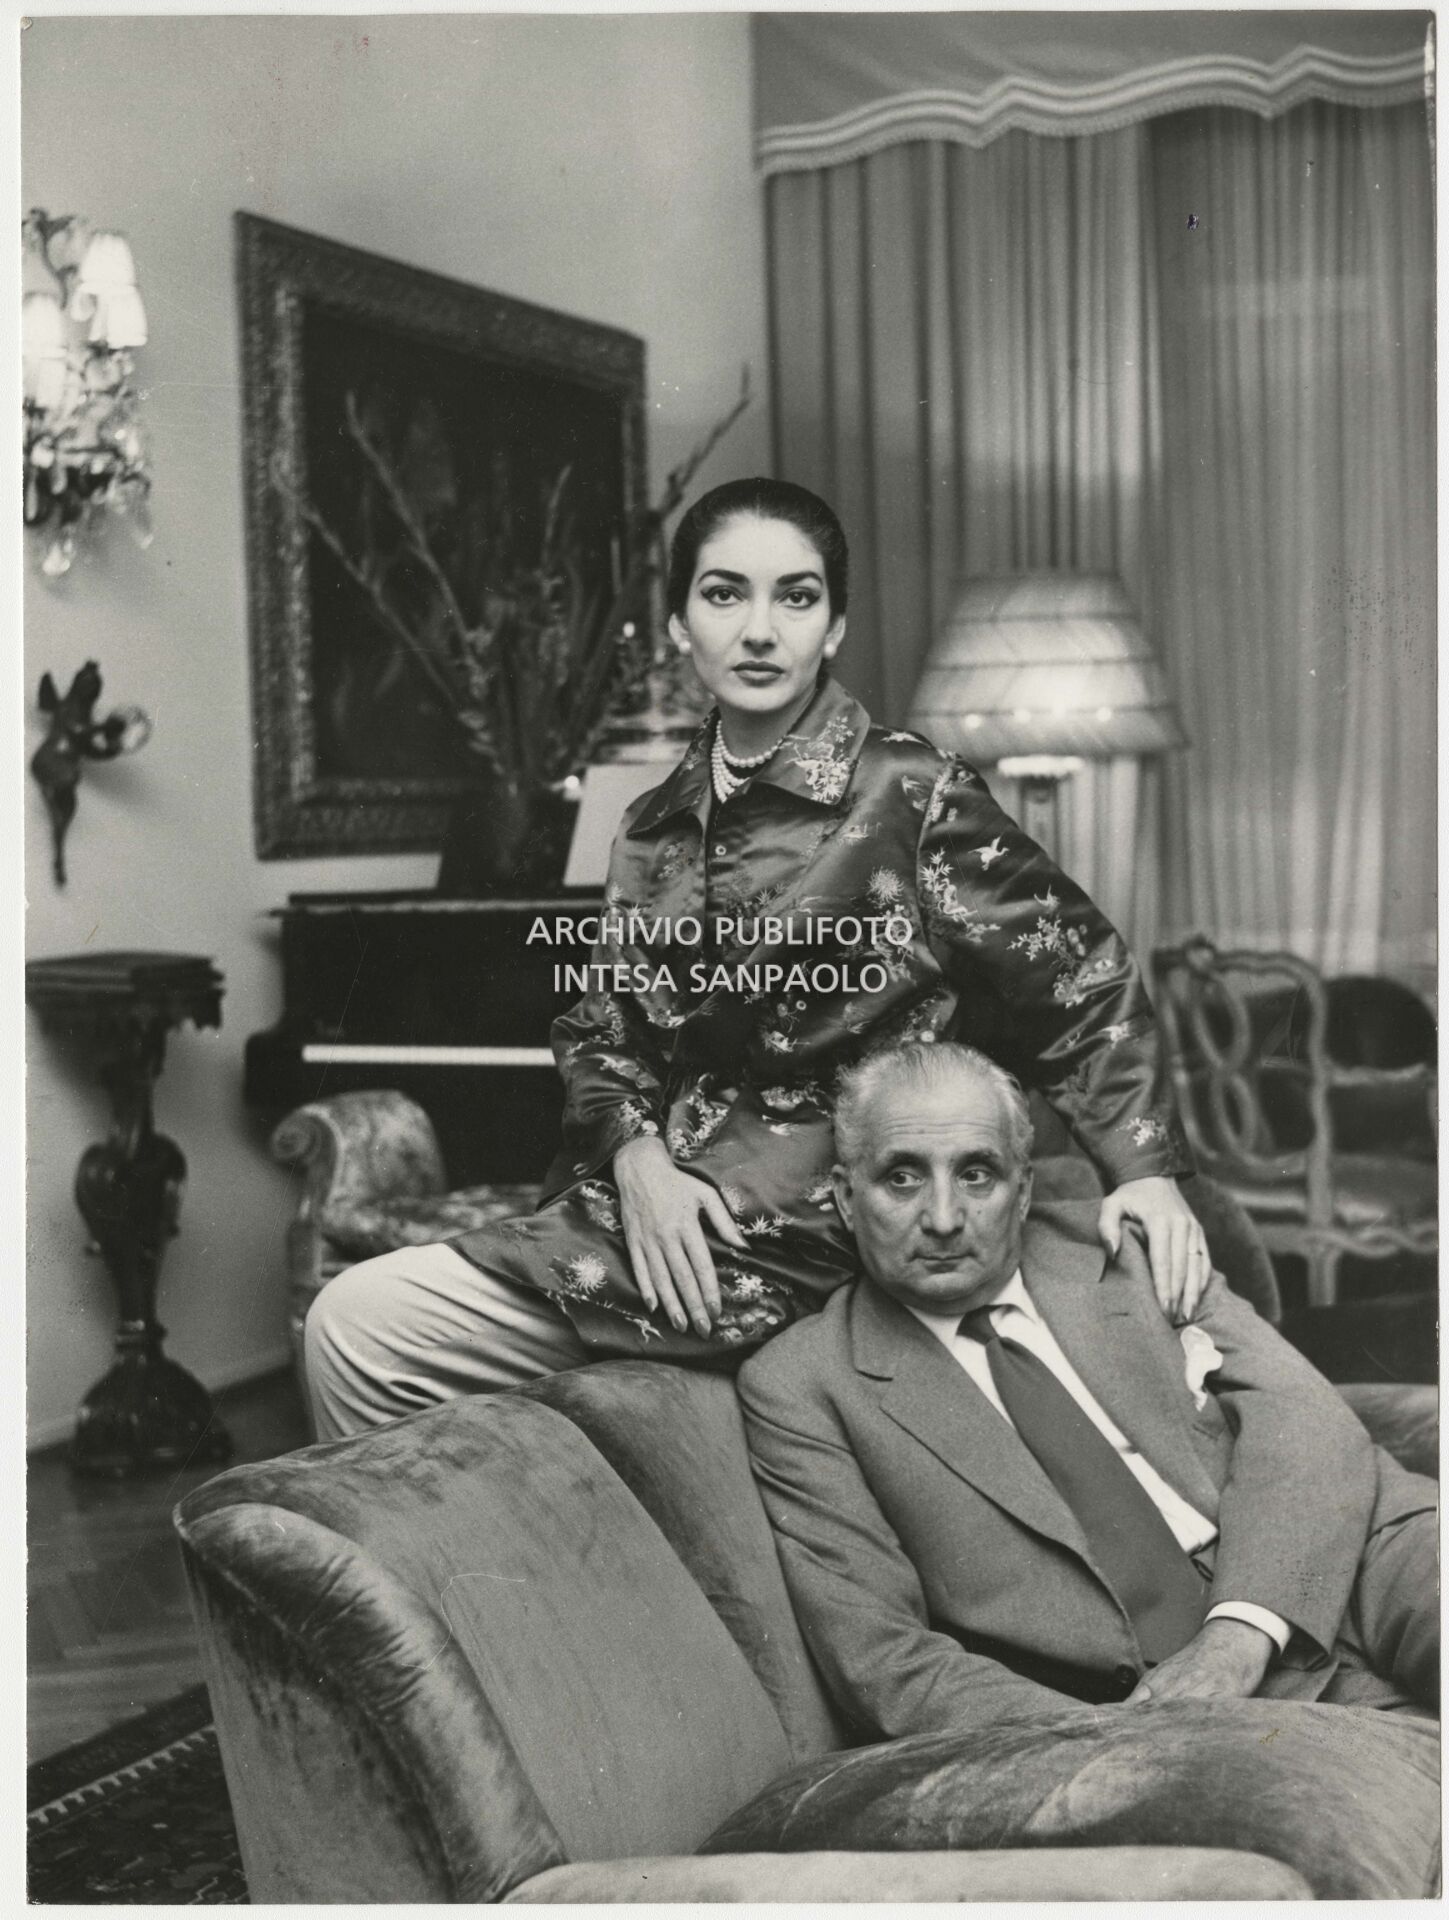 Maria Callas with her husband Giovanni Battista Meneghini at home